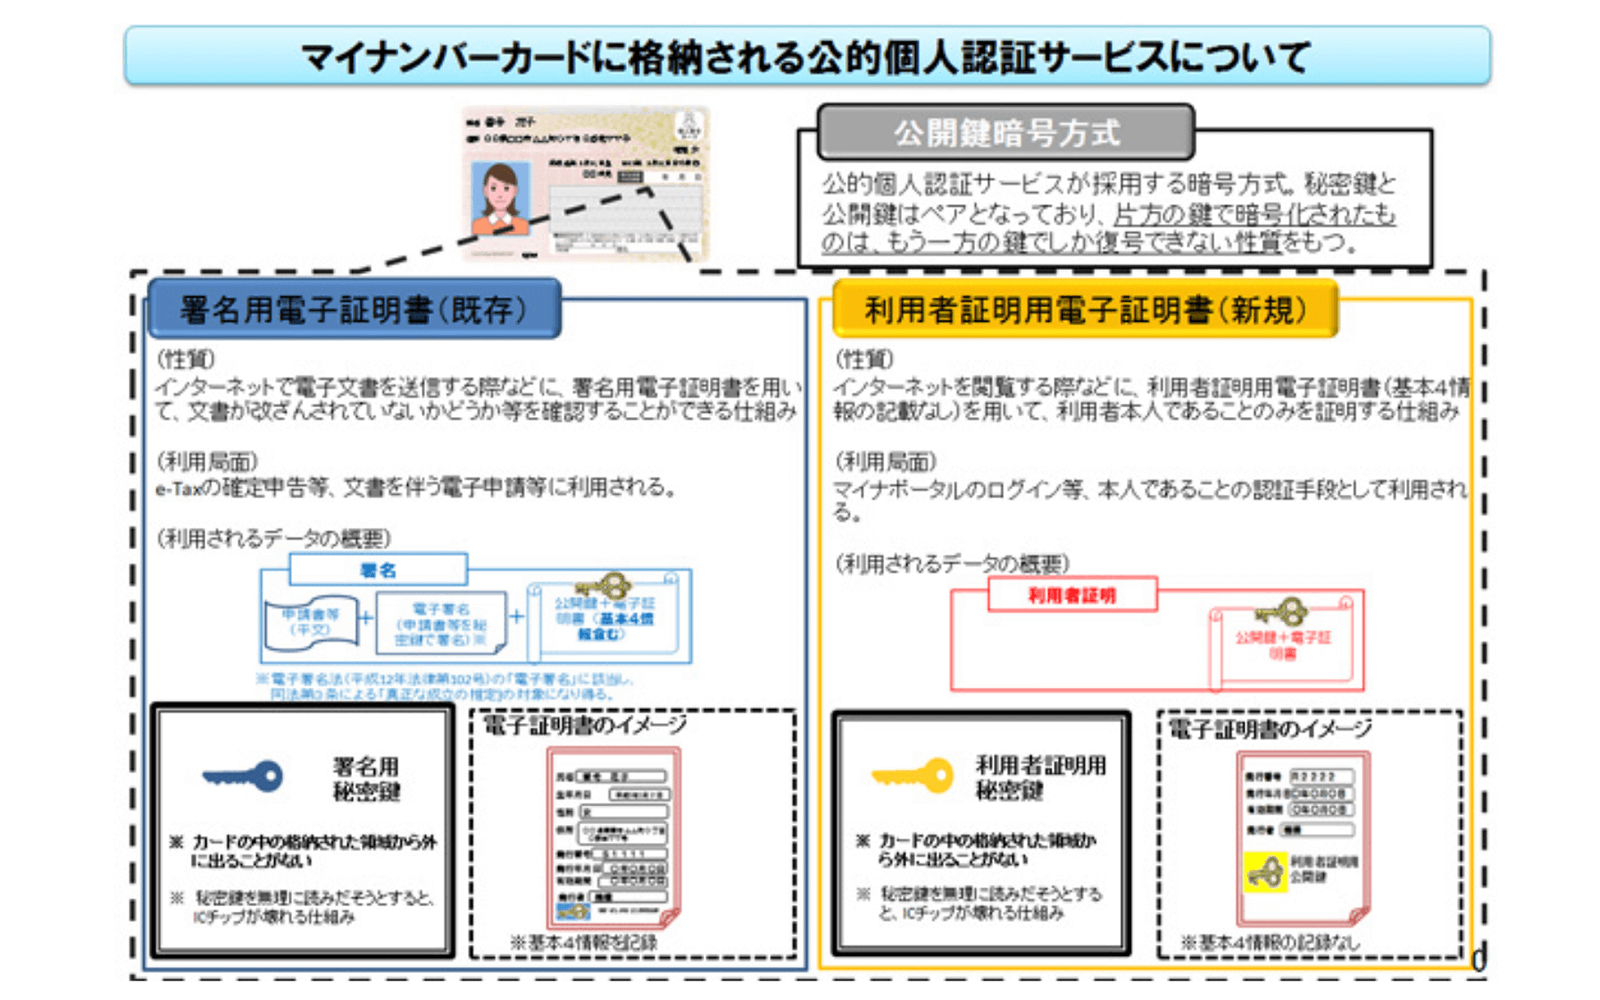 マイナンバーカードには署名用電子証明書が内蔵されている。 https://www.soumu.go.jp/kojinbango_card/kojinninshou-01.html 2021年12月10日最終アクセス